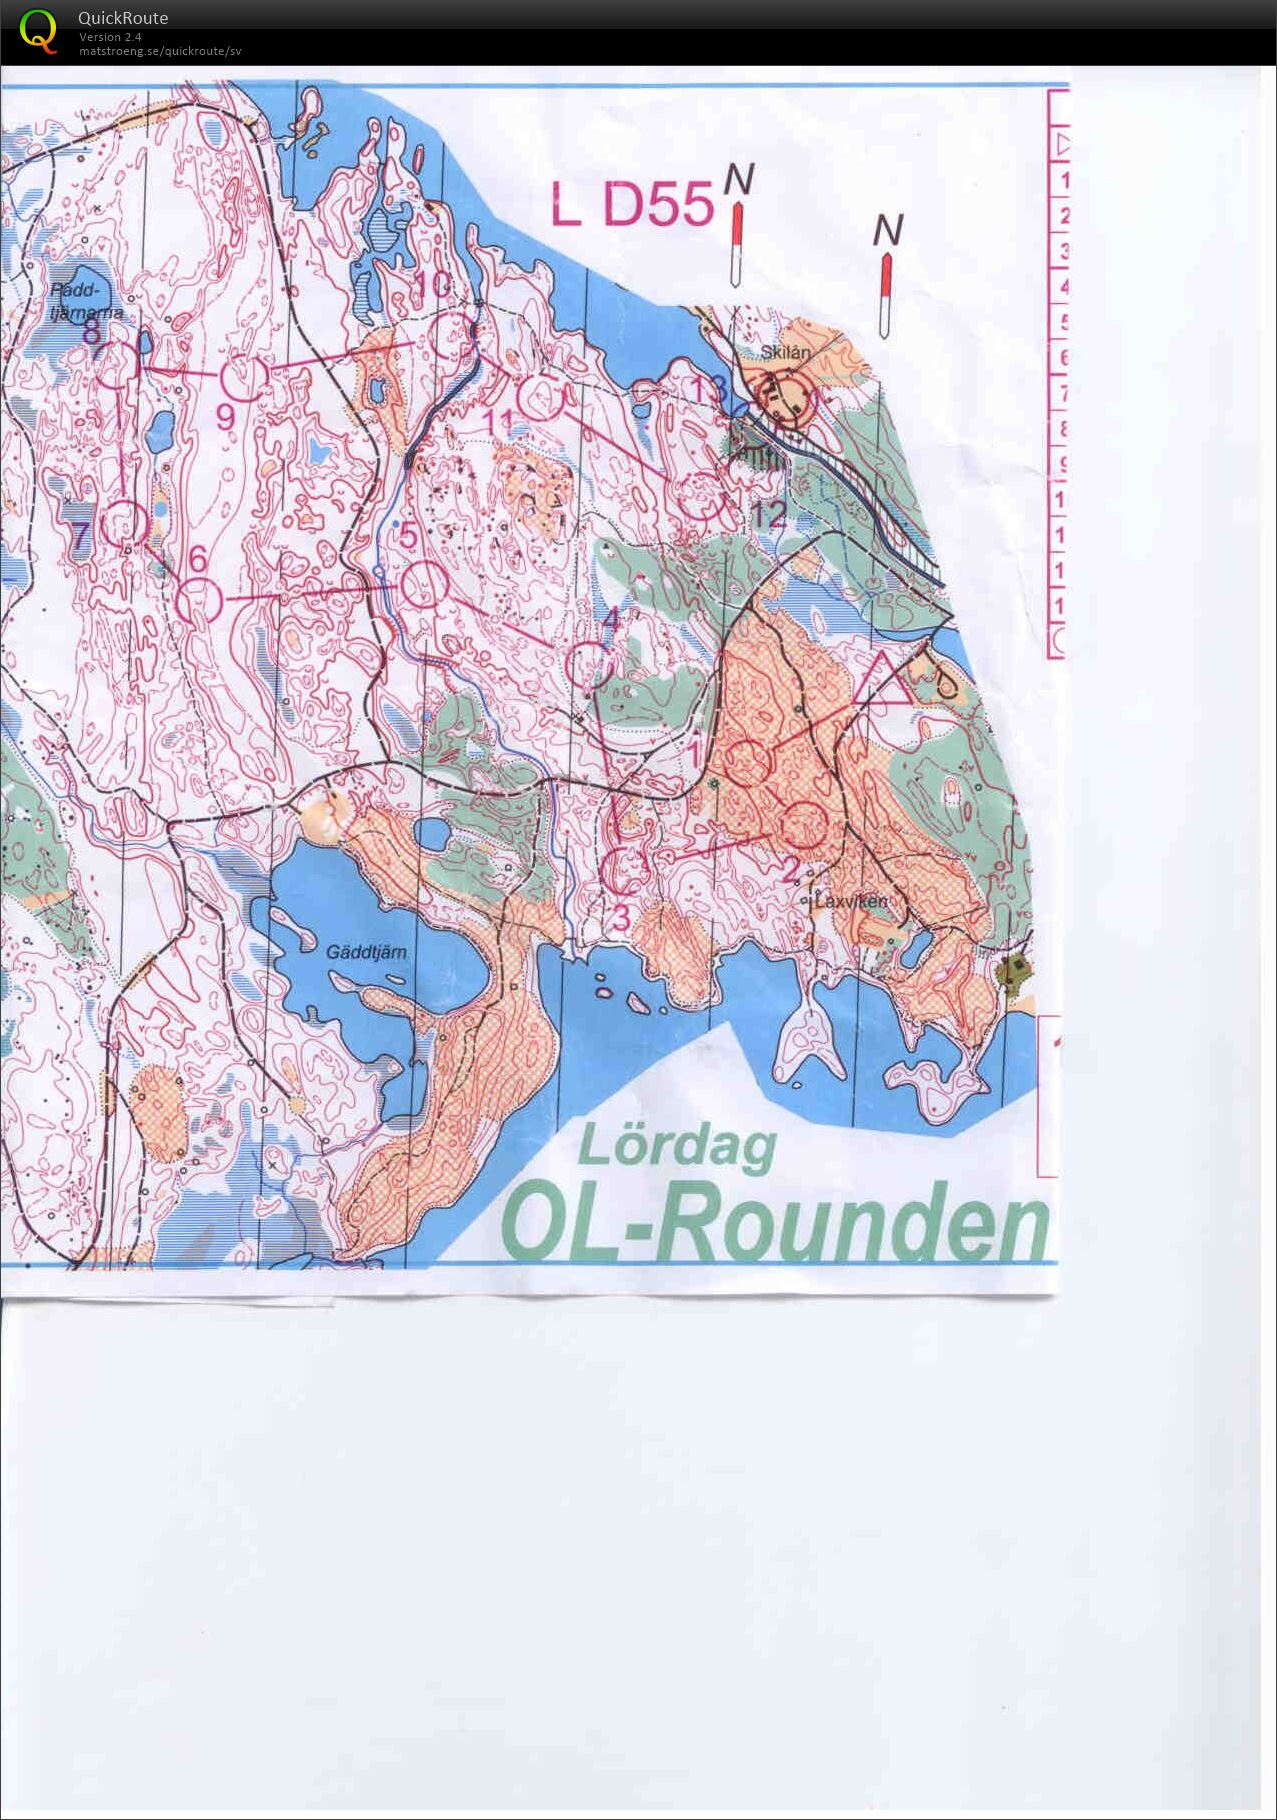 OL-rounden lång (2015-08-15)